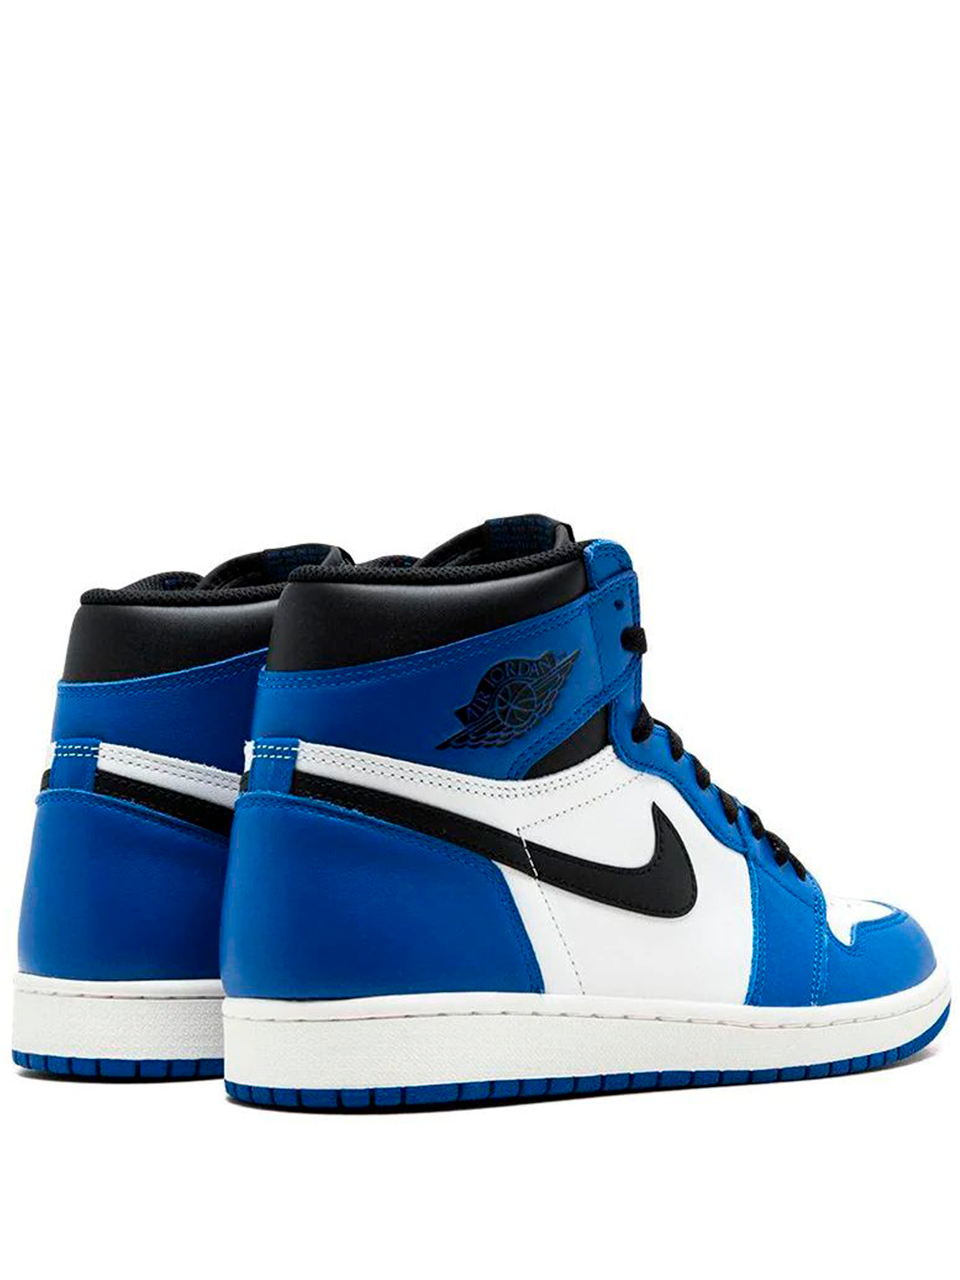 Imagem de: Tênis Nike Air Jordan 1 Retro High OG Azul e Branco